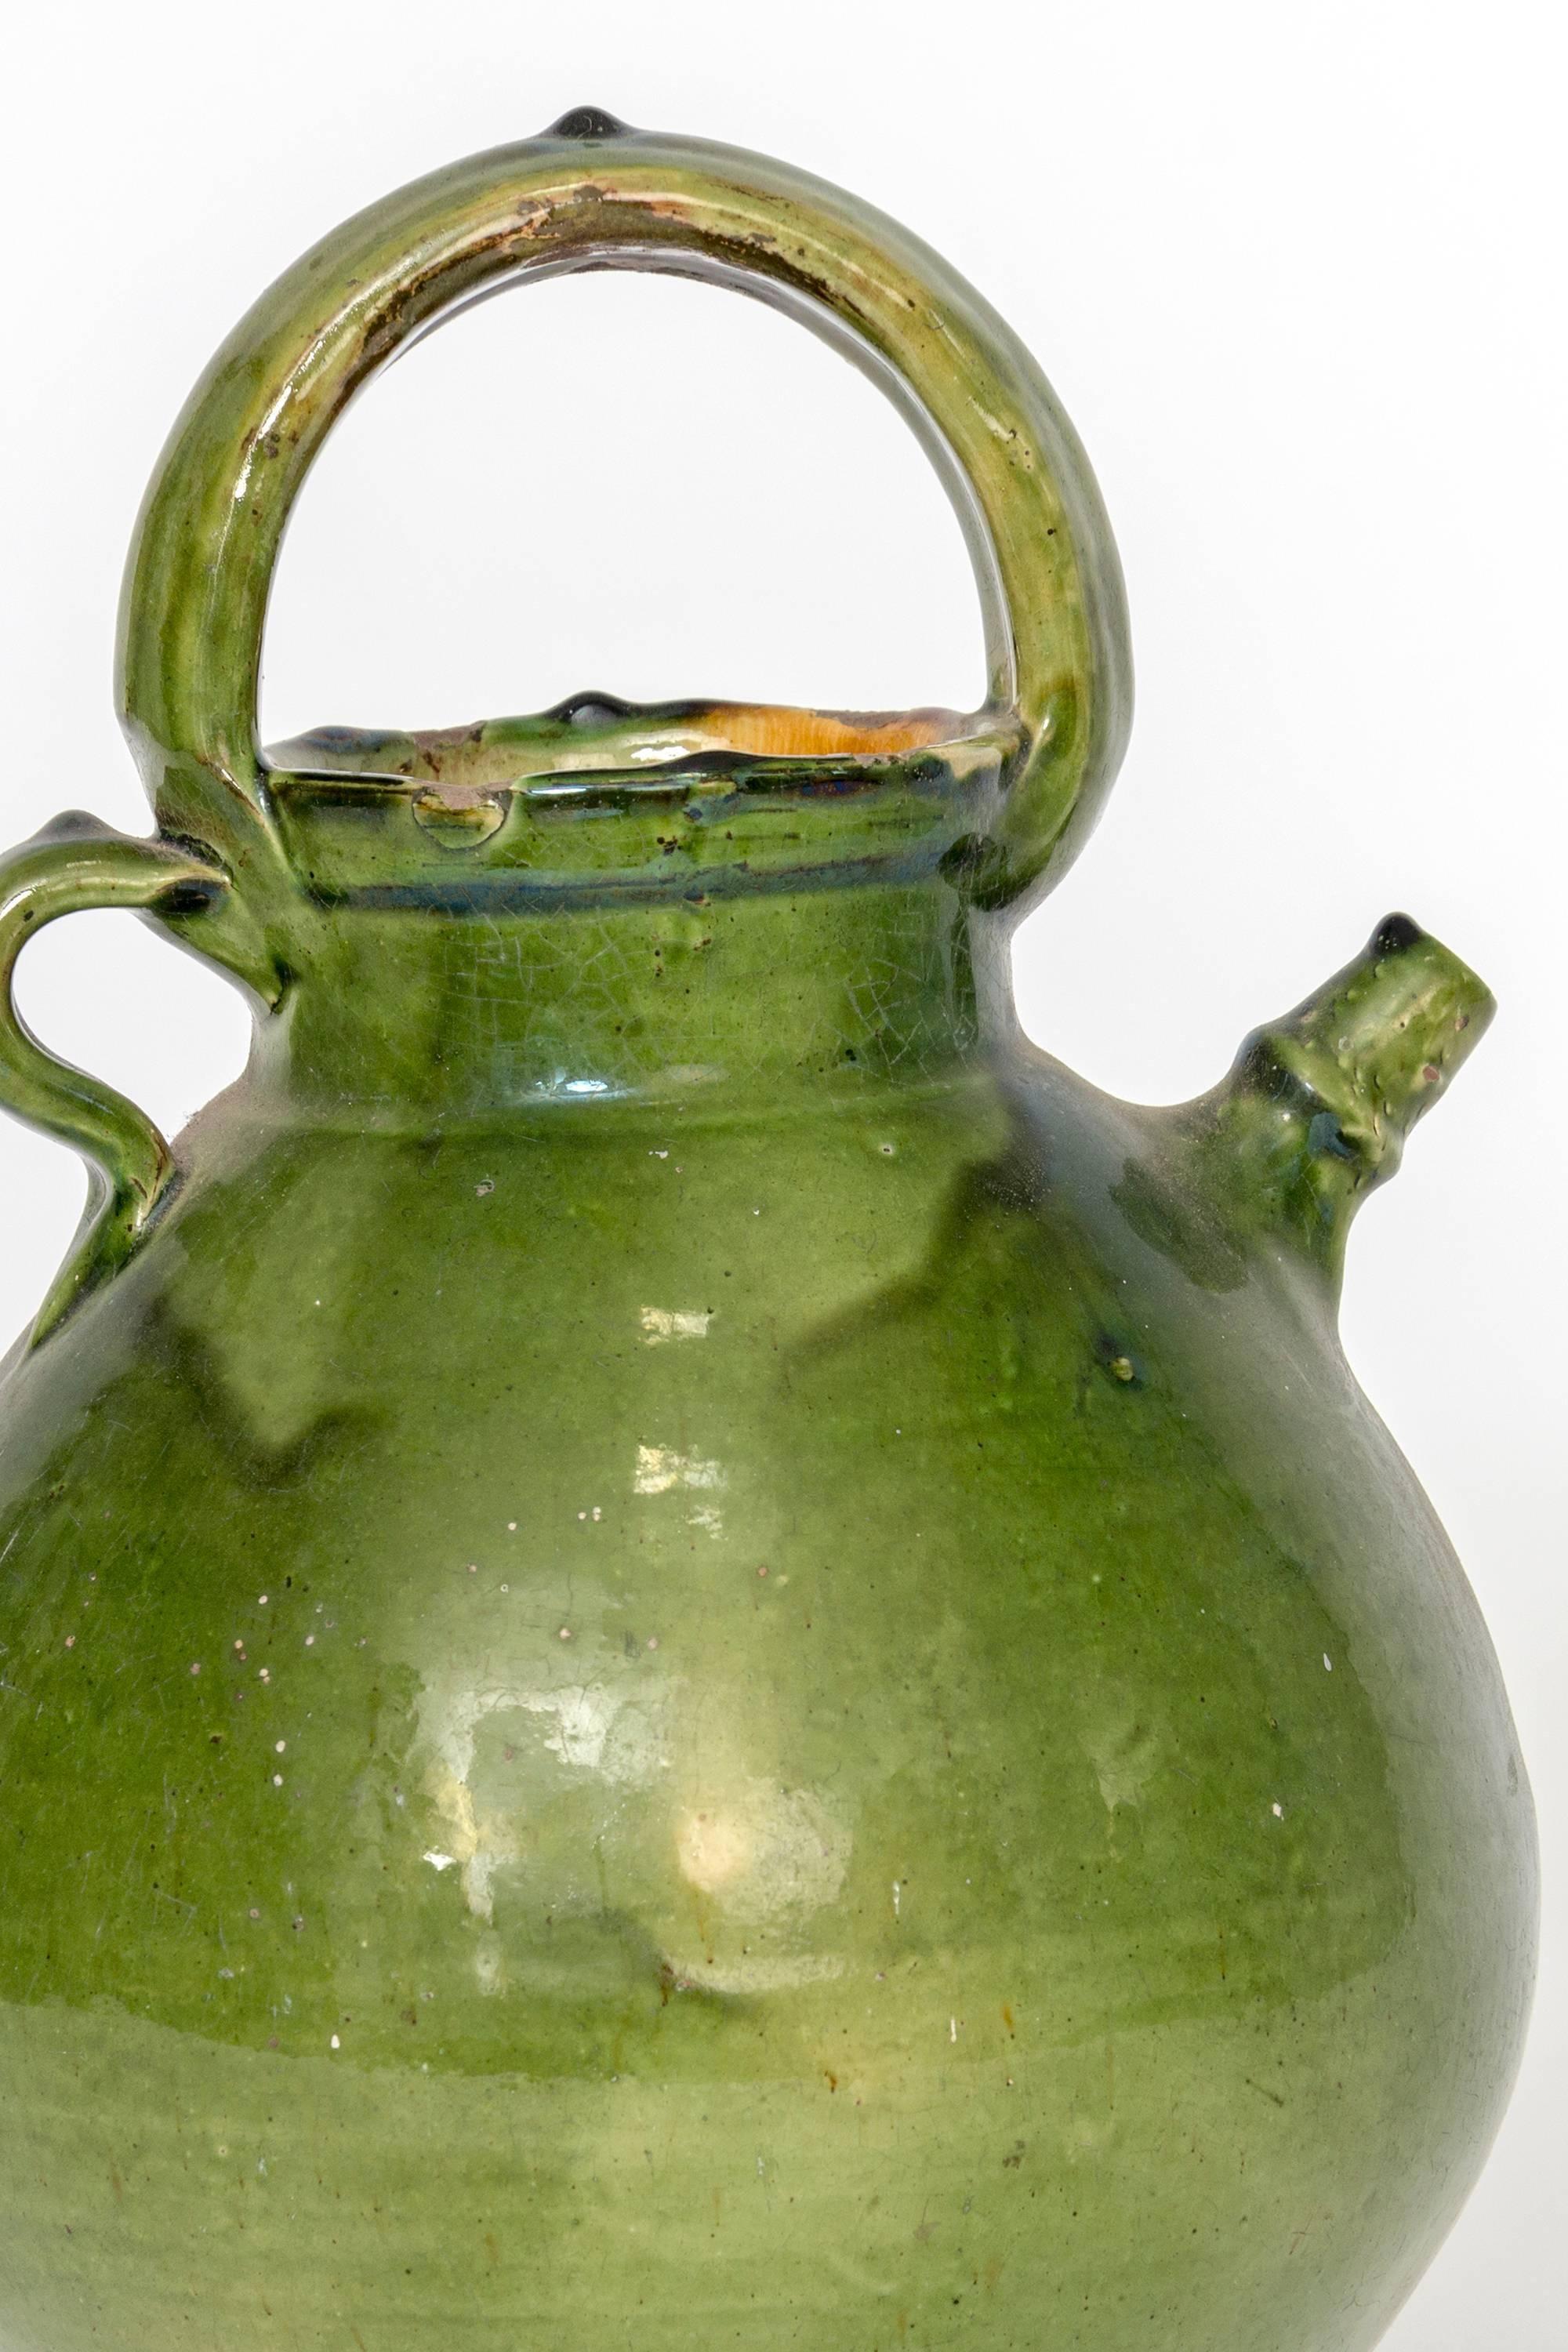 Großer Krug aus grüner französischer Keramik, wahrscheinlich für die Aufbewahrung von Olivenöl verwendet.